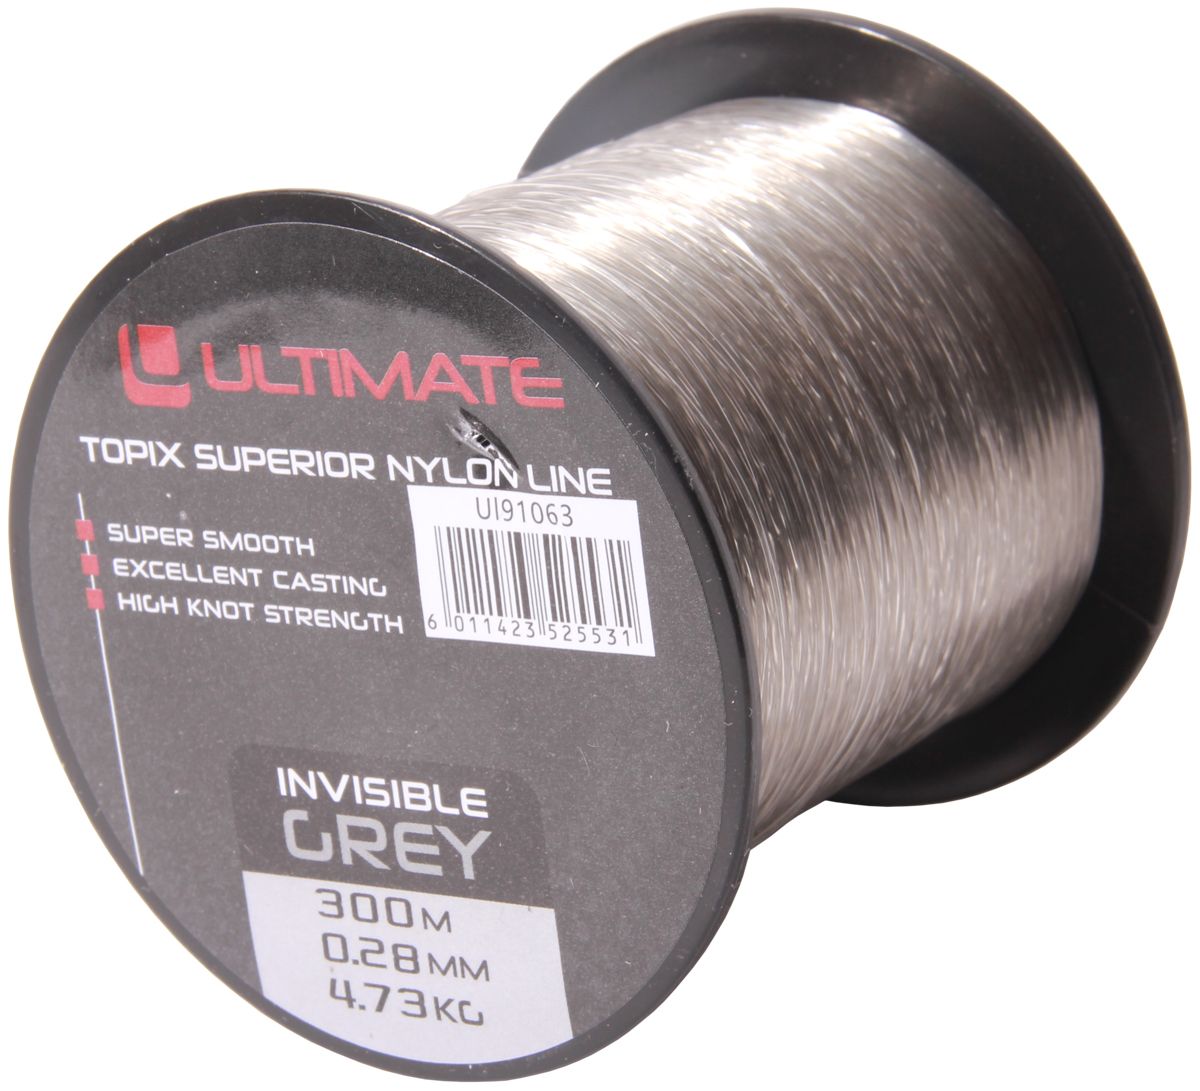 Ultimate Topix Nylon Invisible Grey, 300m